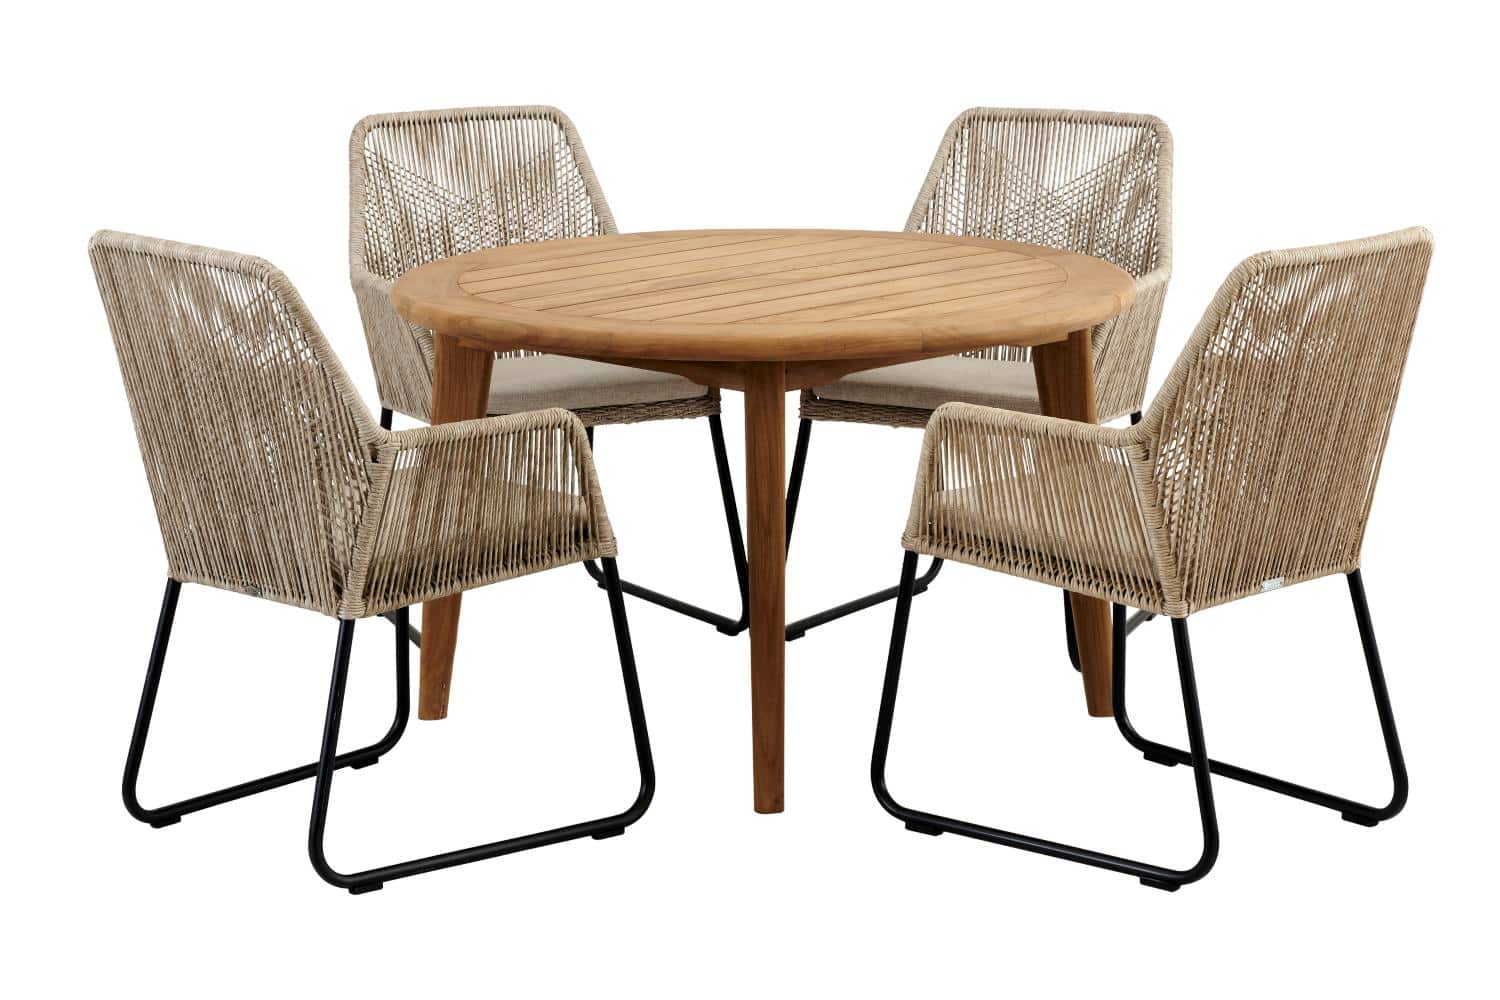 Brafab Lilja Matbord är ett gediget matbord i teak. Med Midway stolar i natur konstrotting.